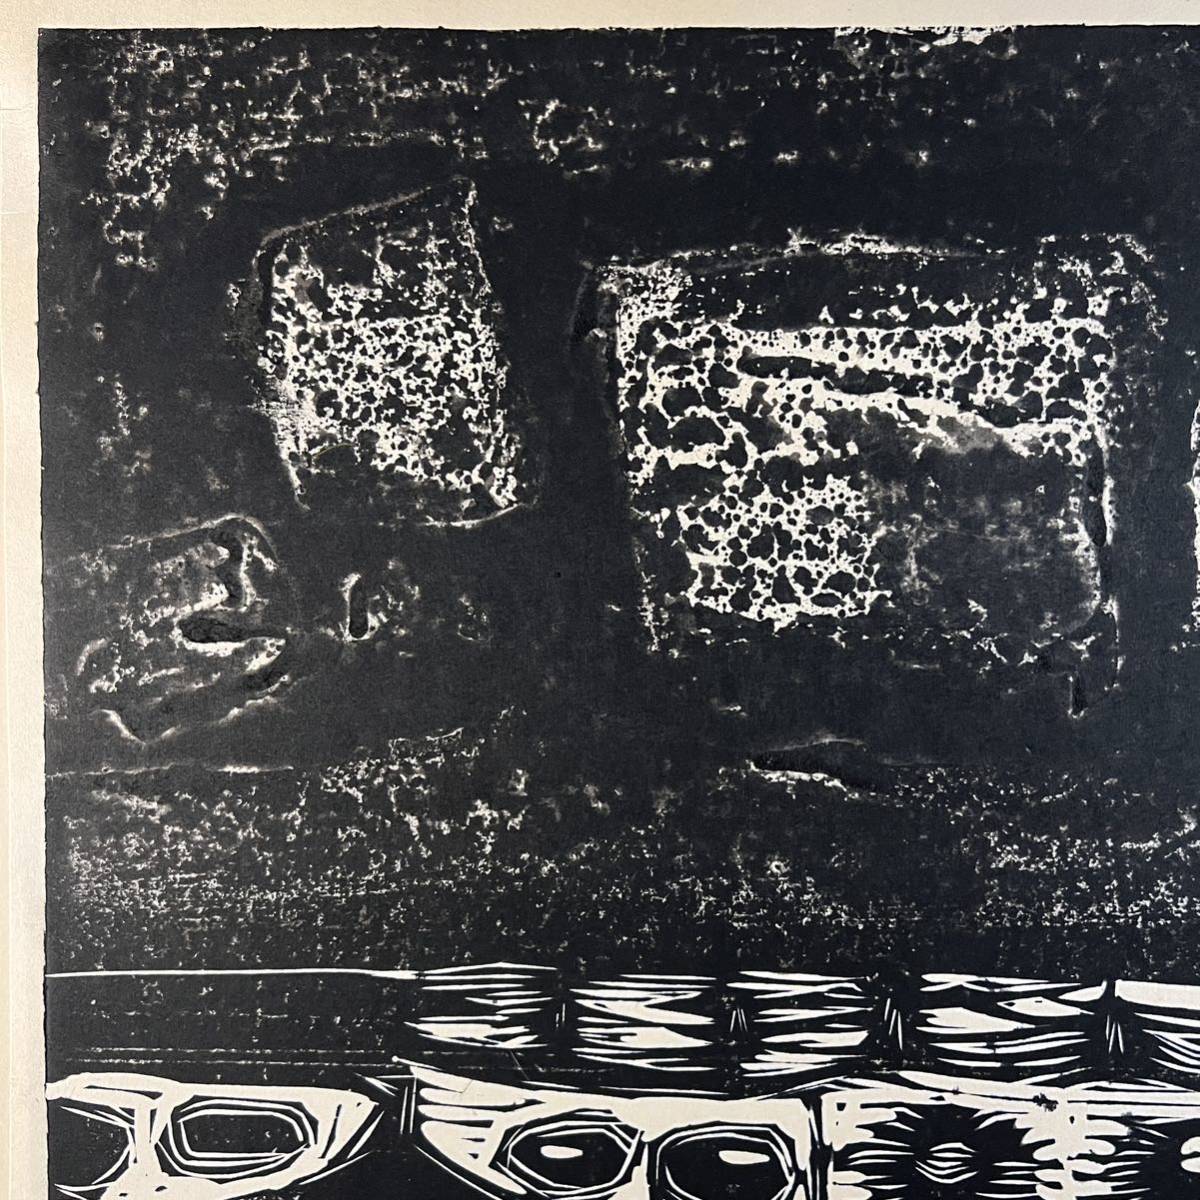 真作 手島圭三郎 『残雪』 木版画 1964年1月10日作 道版展会員 直筆サイン入り 直筆裏書きあり 絵本作家 版画_画像8